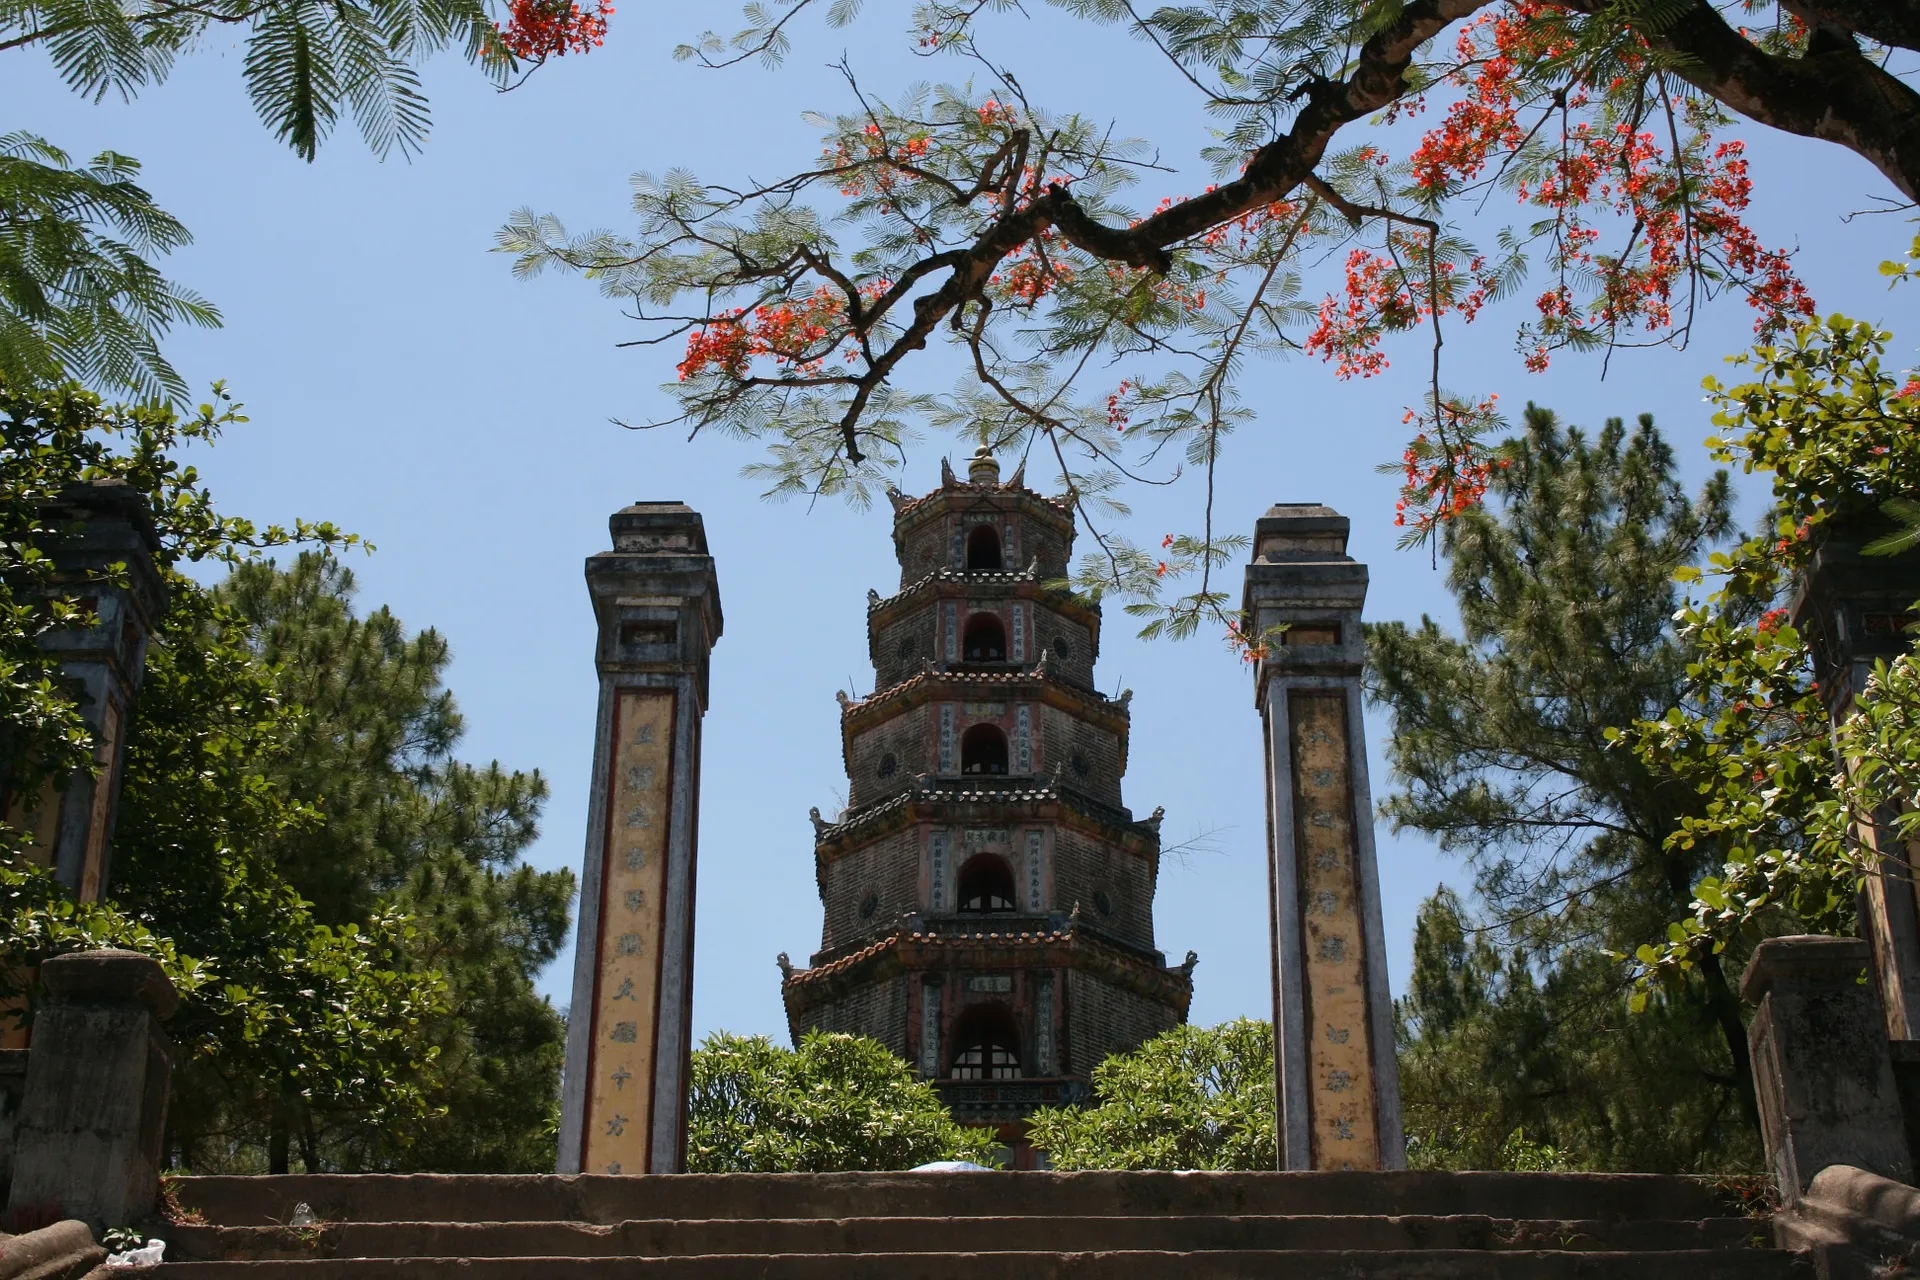 View of Thien mu pagoda